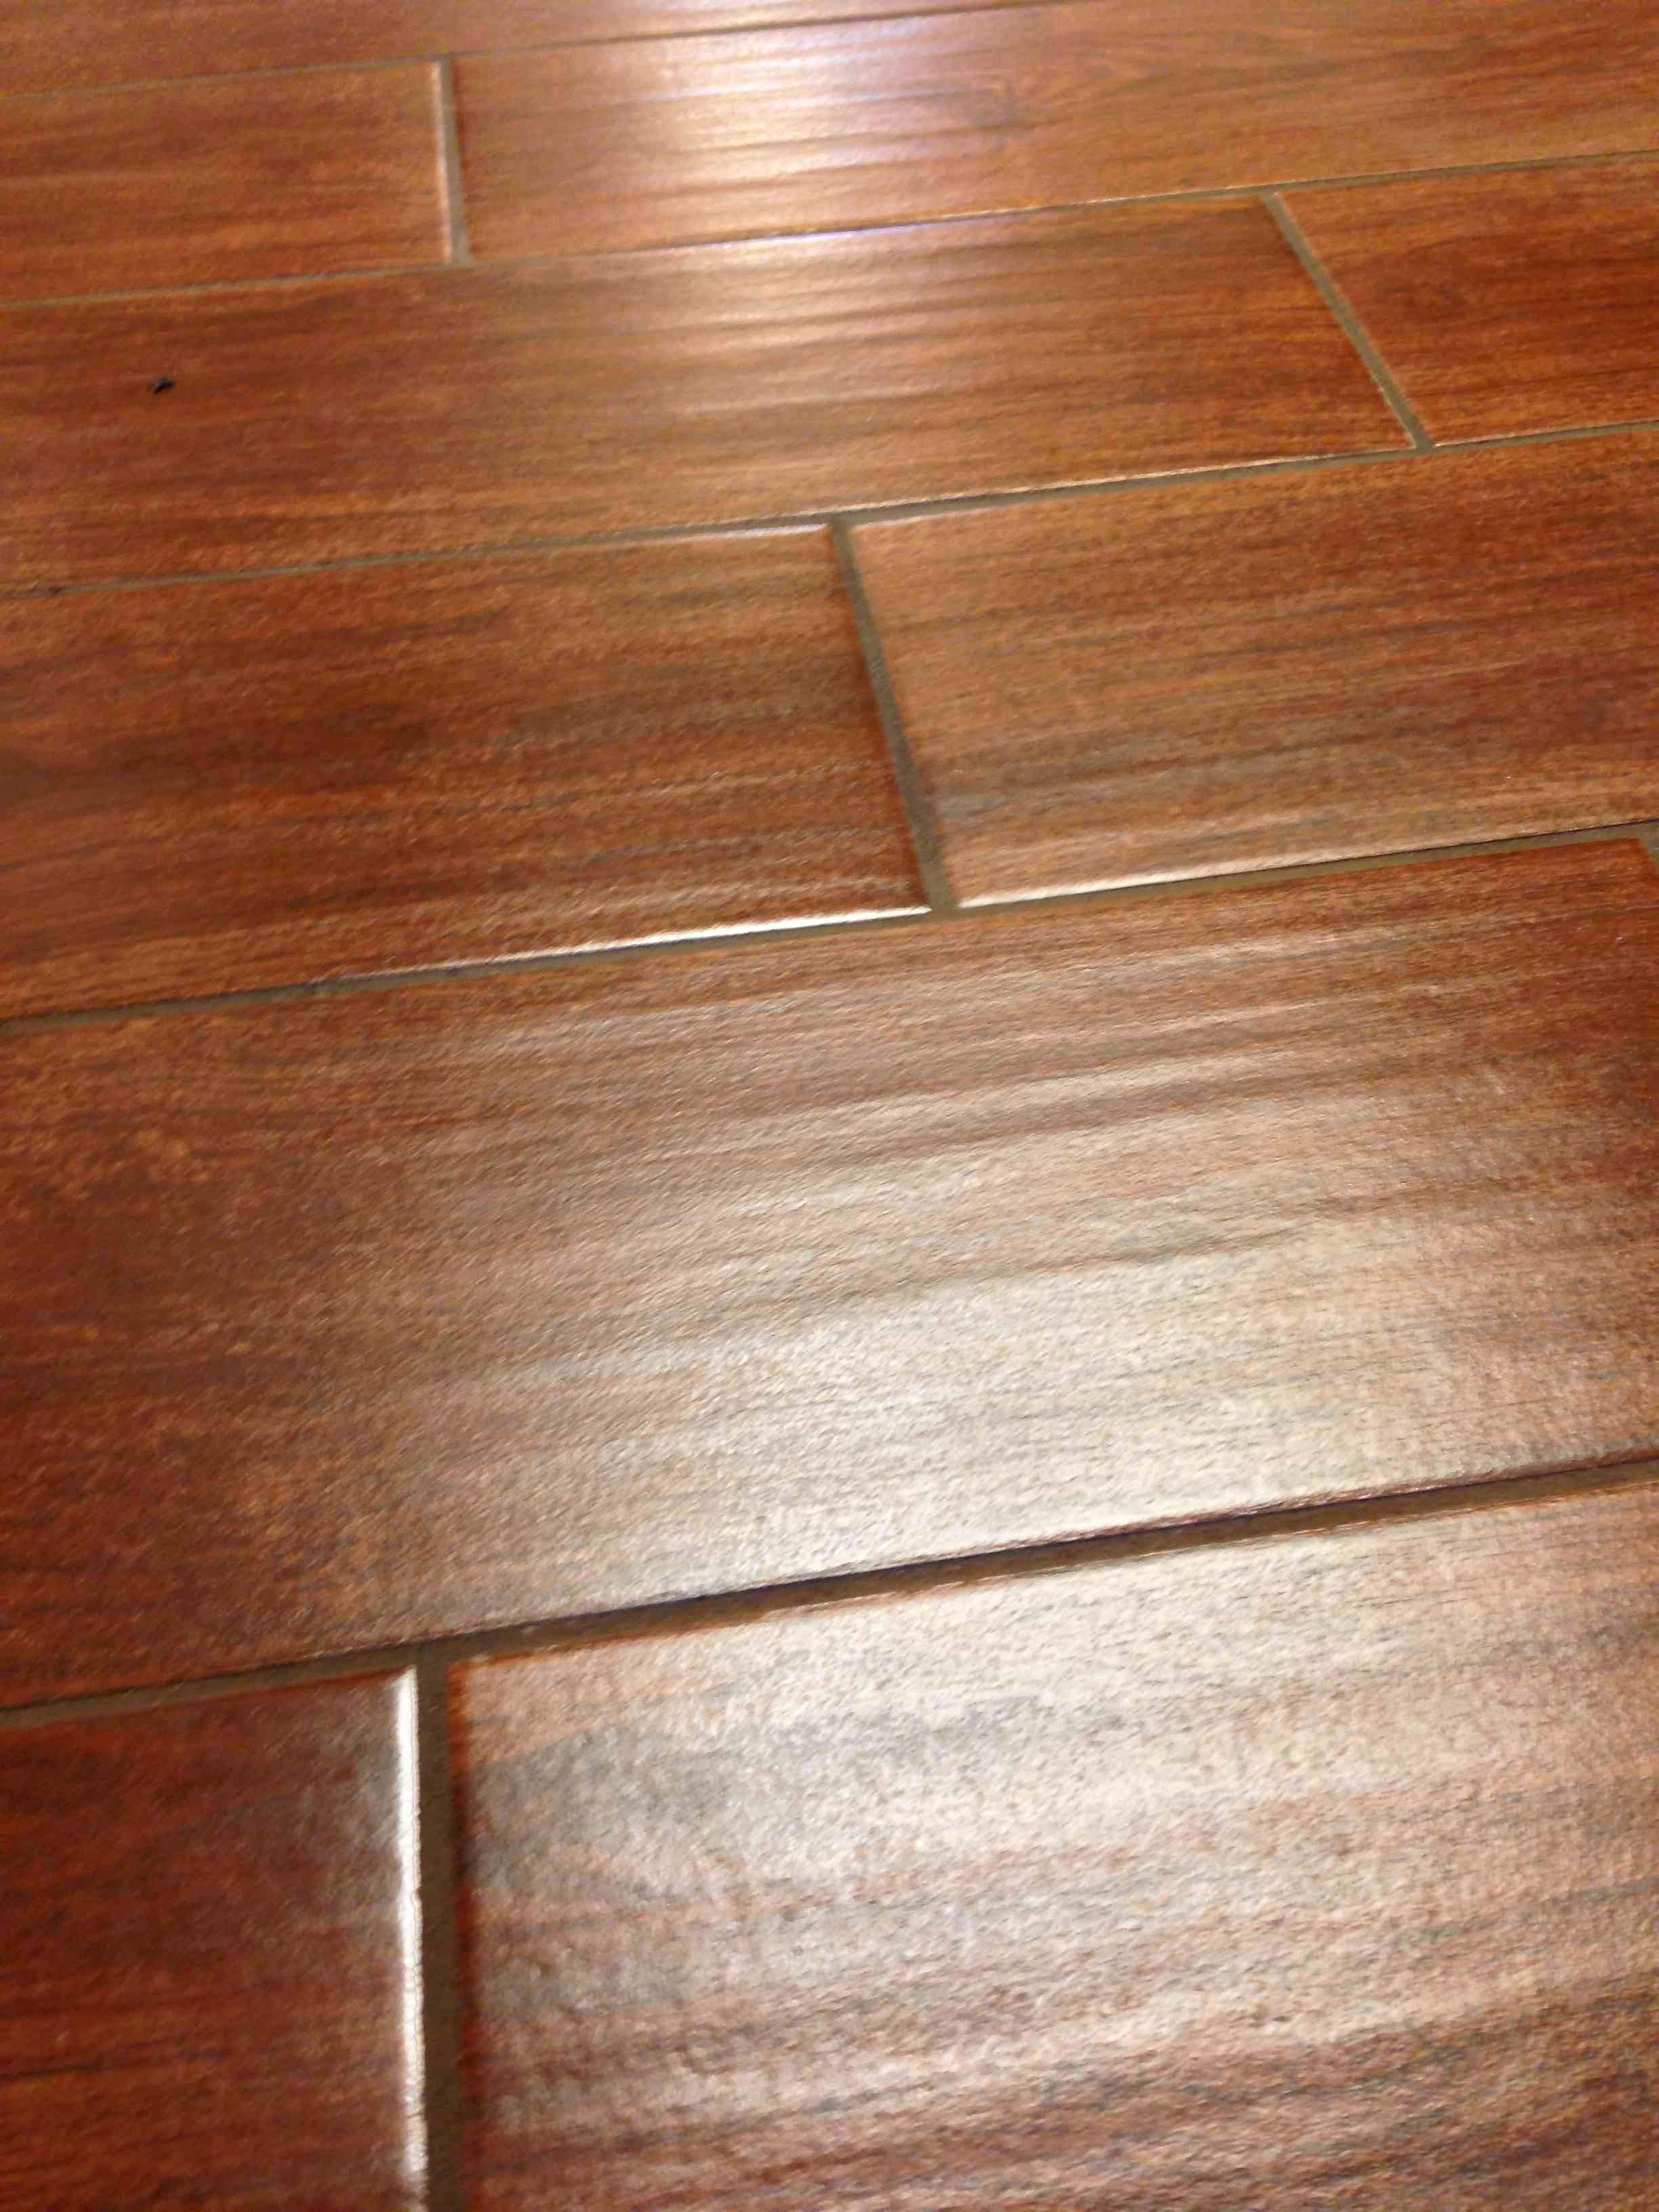 hardwood flooring sale mississauga of inexpensive hardwood flooring floor plan ideas intended for harwood flooring best tile that looks like hardwood floors elegant i pinimg 736x 0d 7b